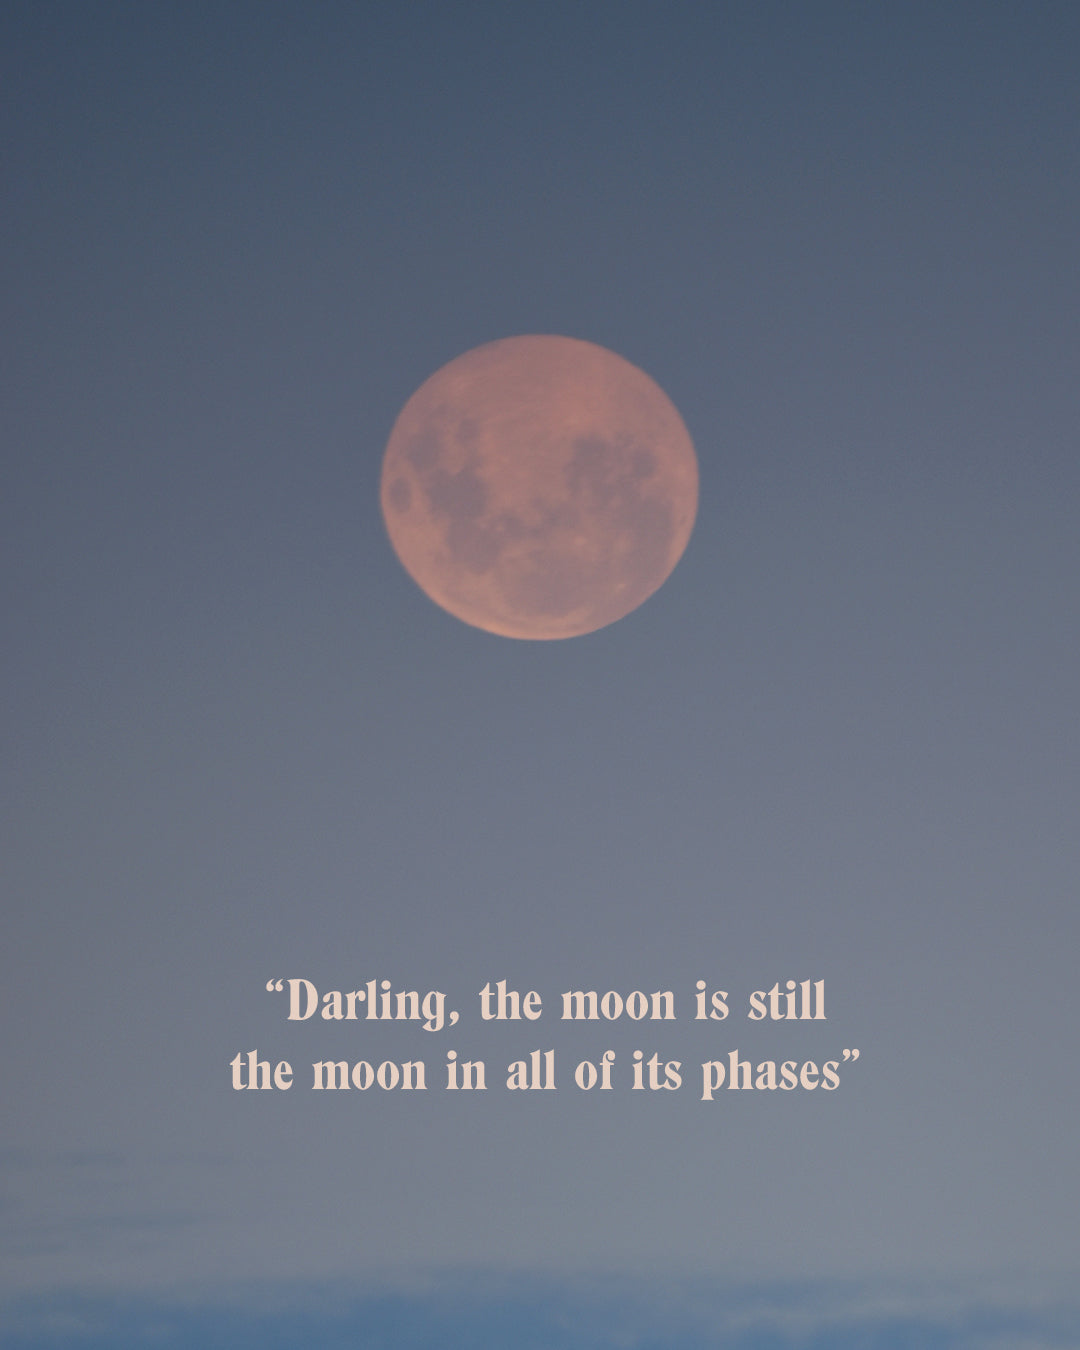 Las fases de la luna